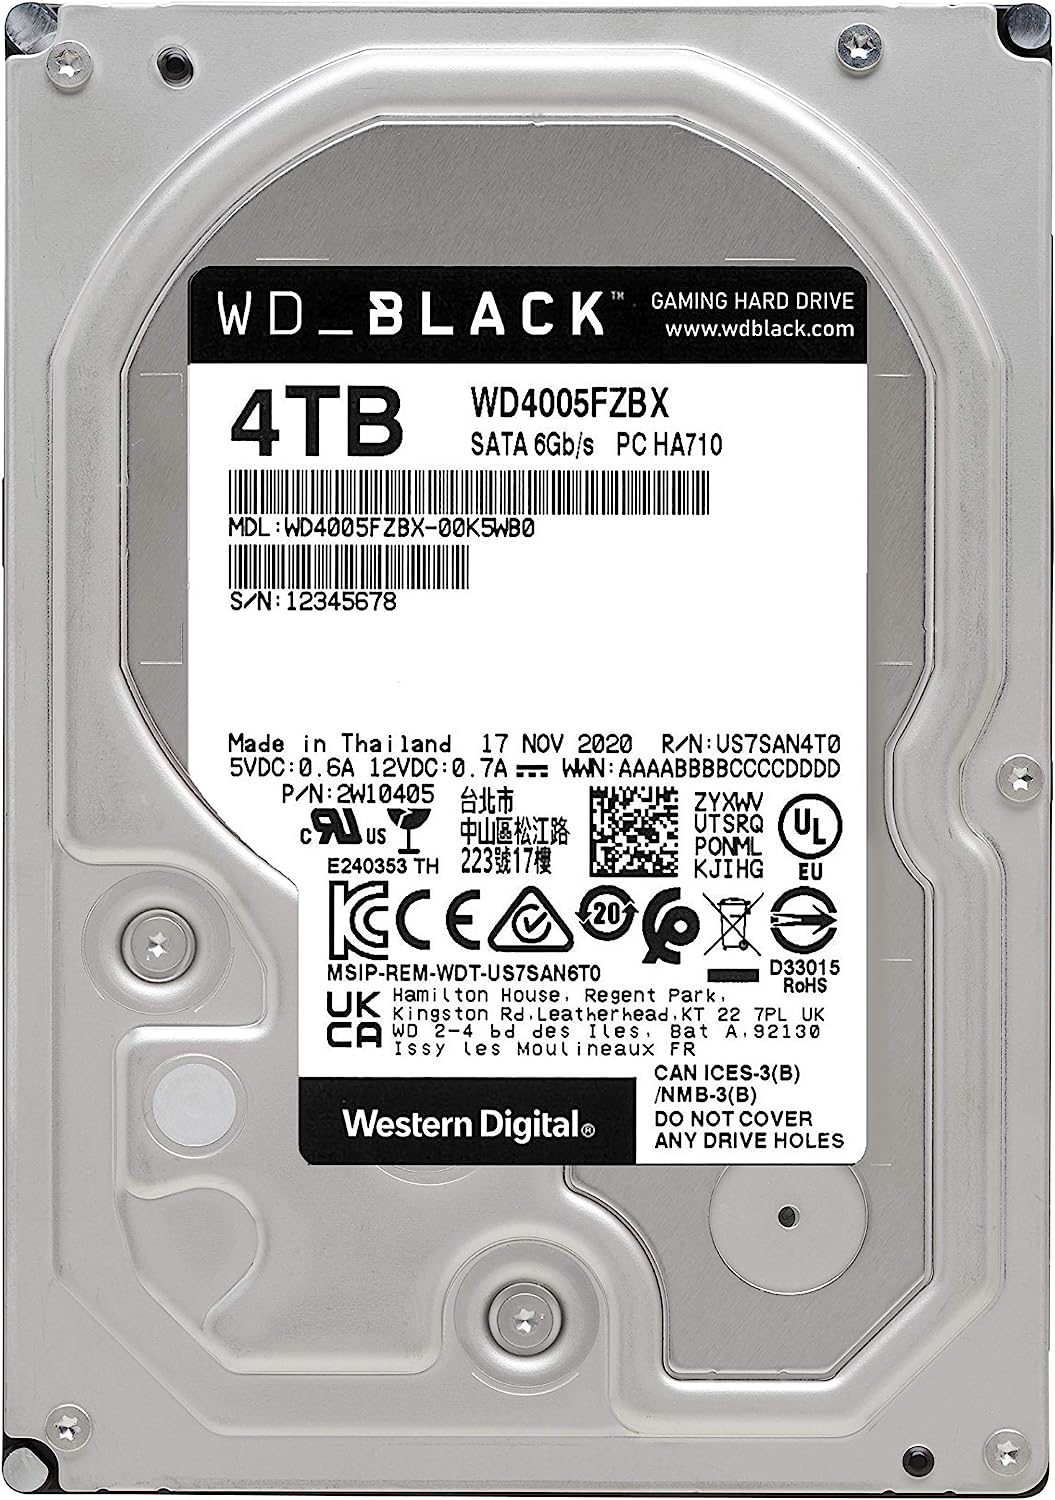 WD | Black 4TB Performance Desktop Hard Disk Drive - 7200 RPM SATA 6Gb/s 256MB Cache 3.5 Inch - WD4005FZBX